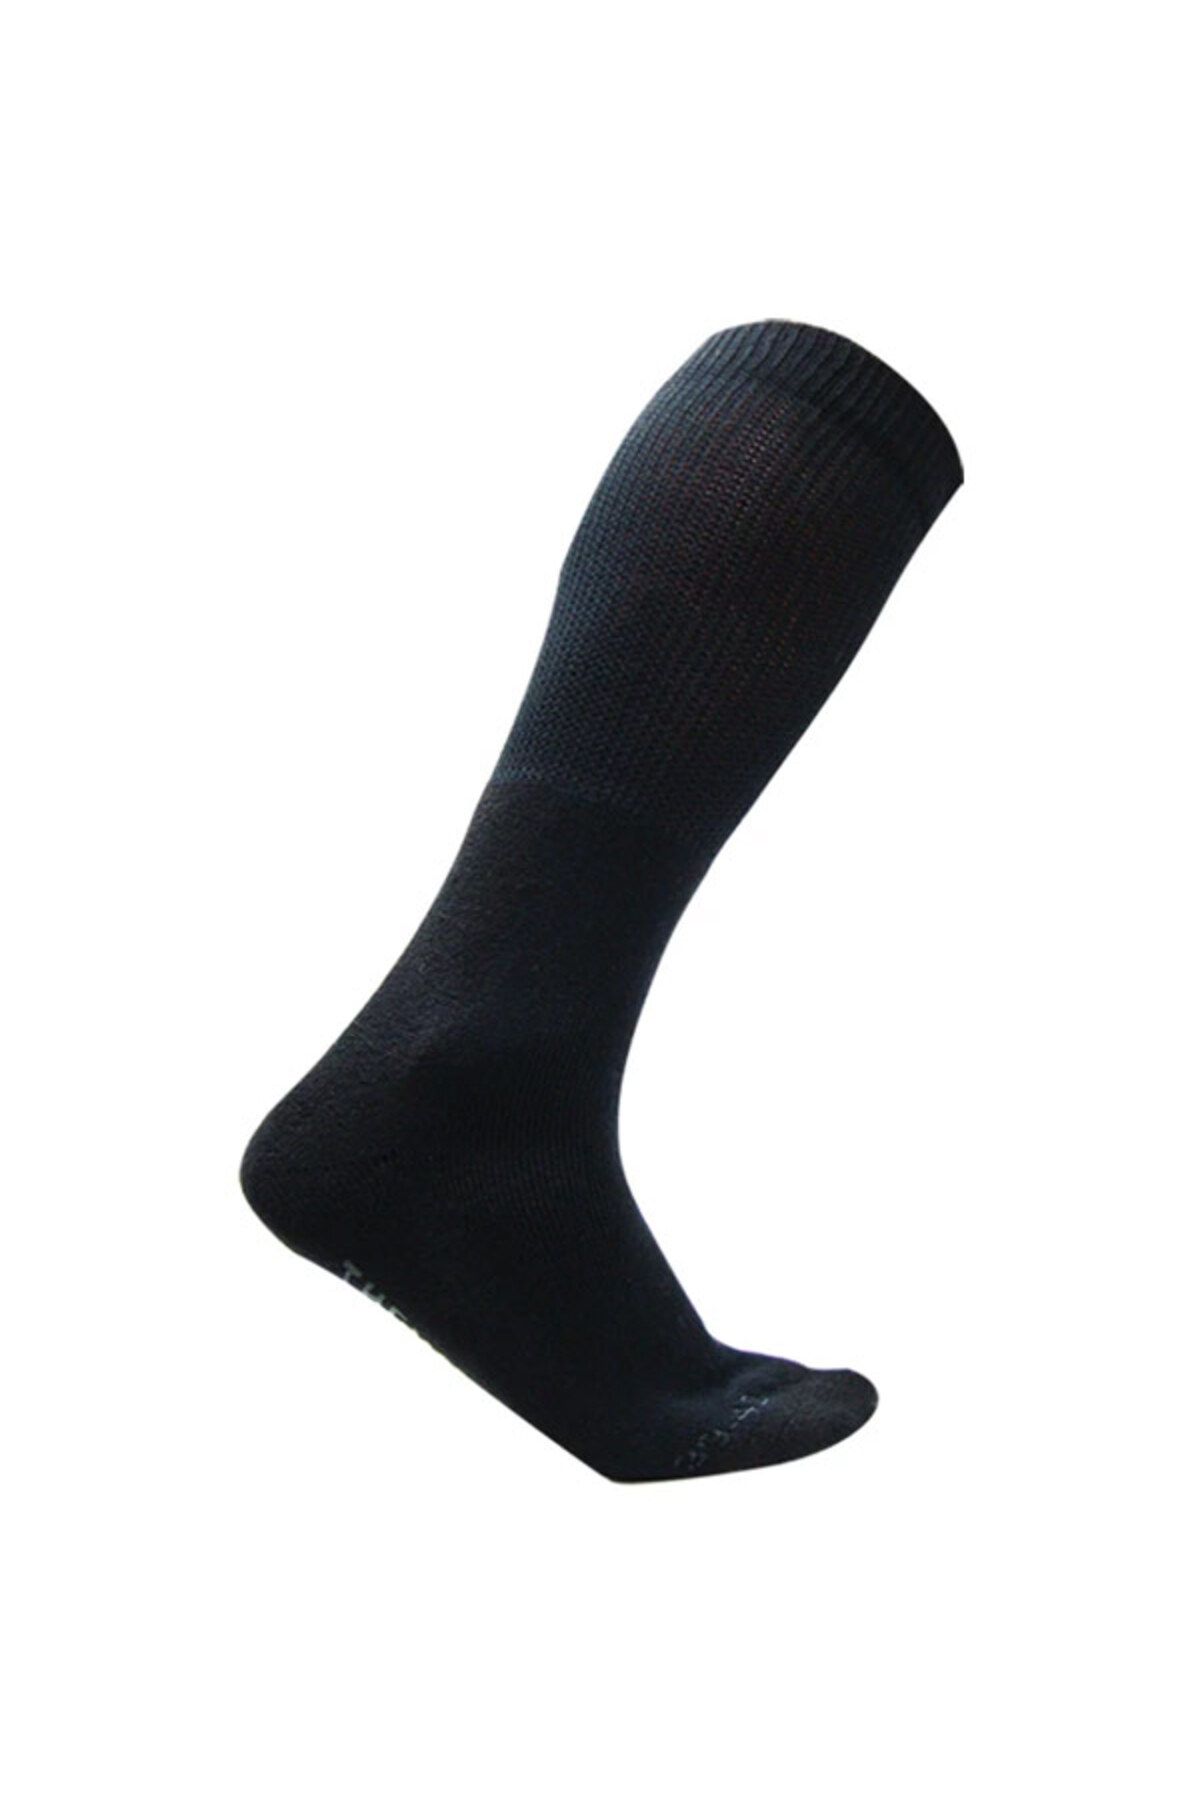 Thermoform Hzts32 Hunting (AVCI) Çorabı Siyah 39-42